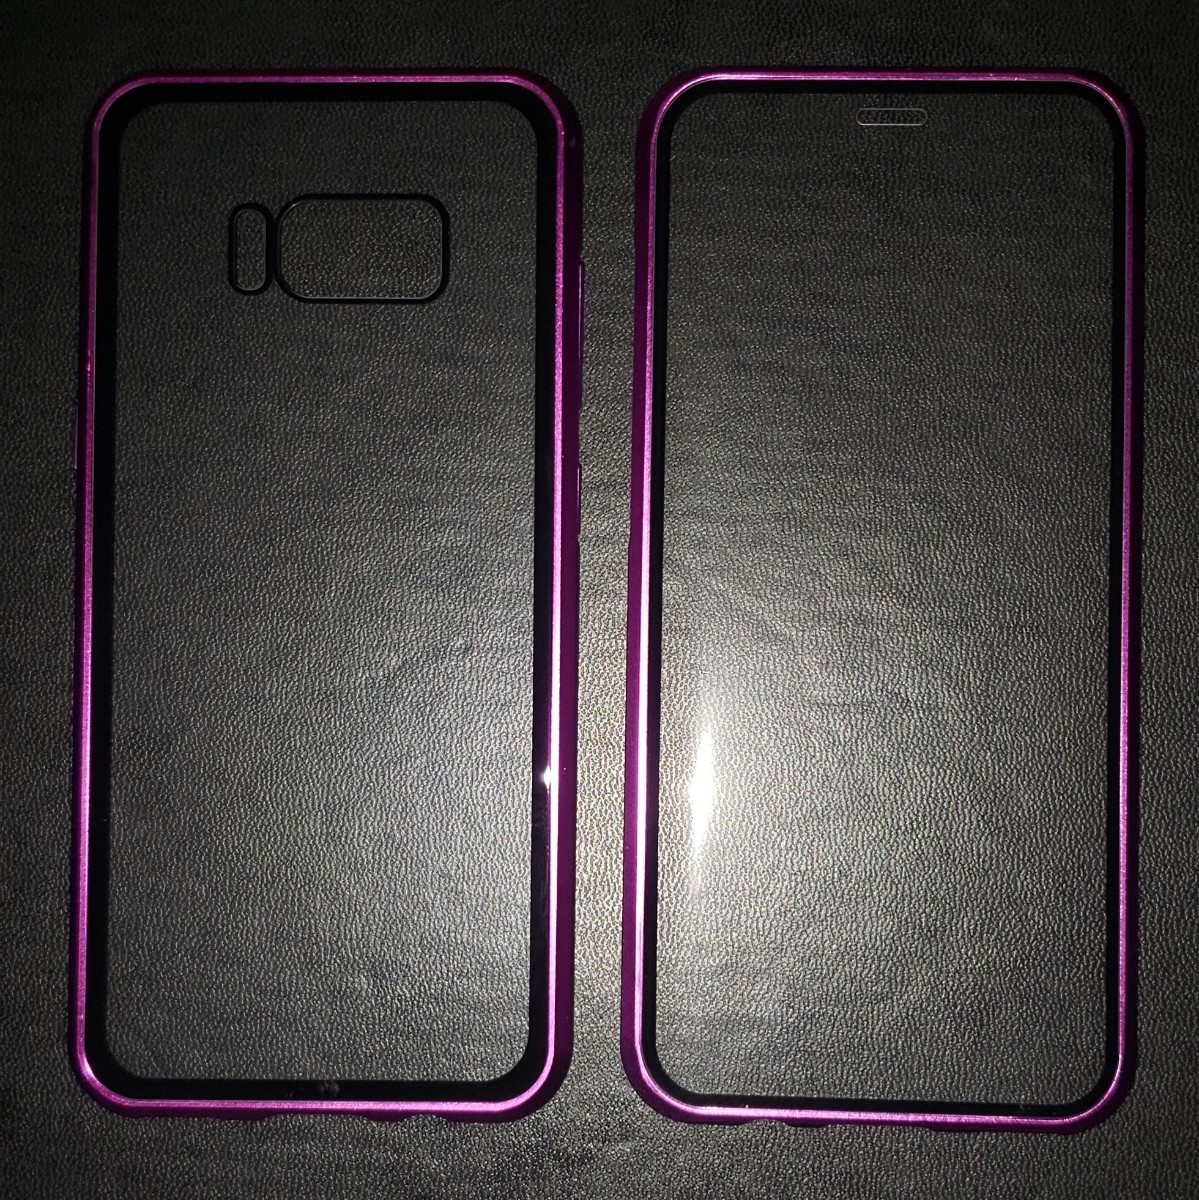 送料込 GALAXY S8 紫/紫 両面ガラスフルカバー携帯ケース スマホケース